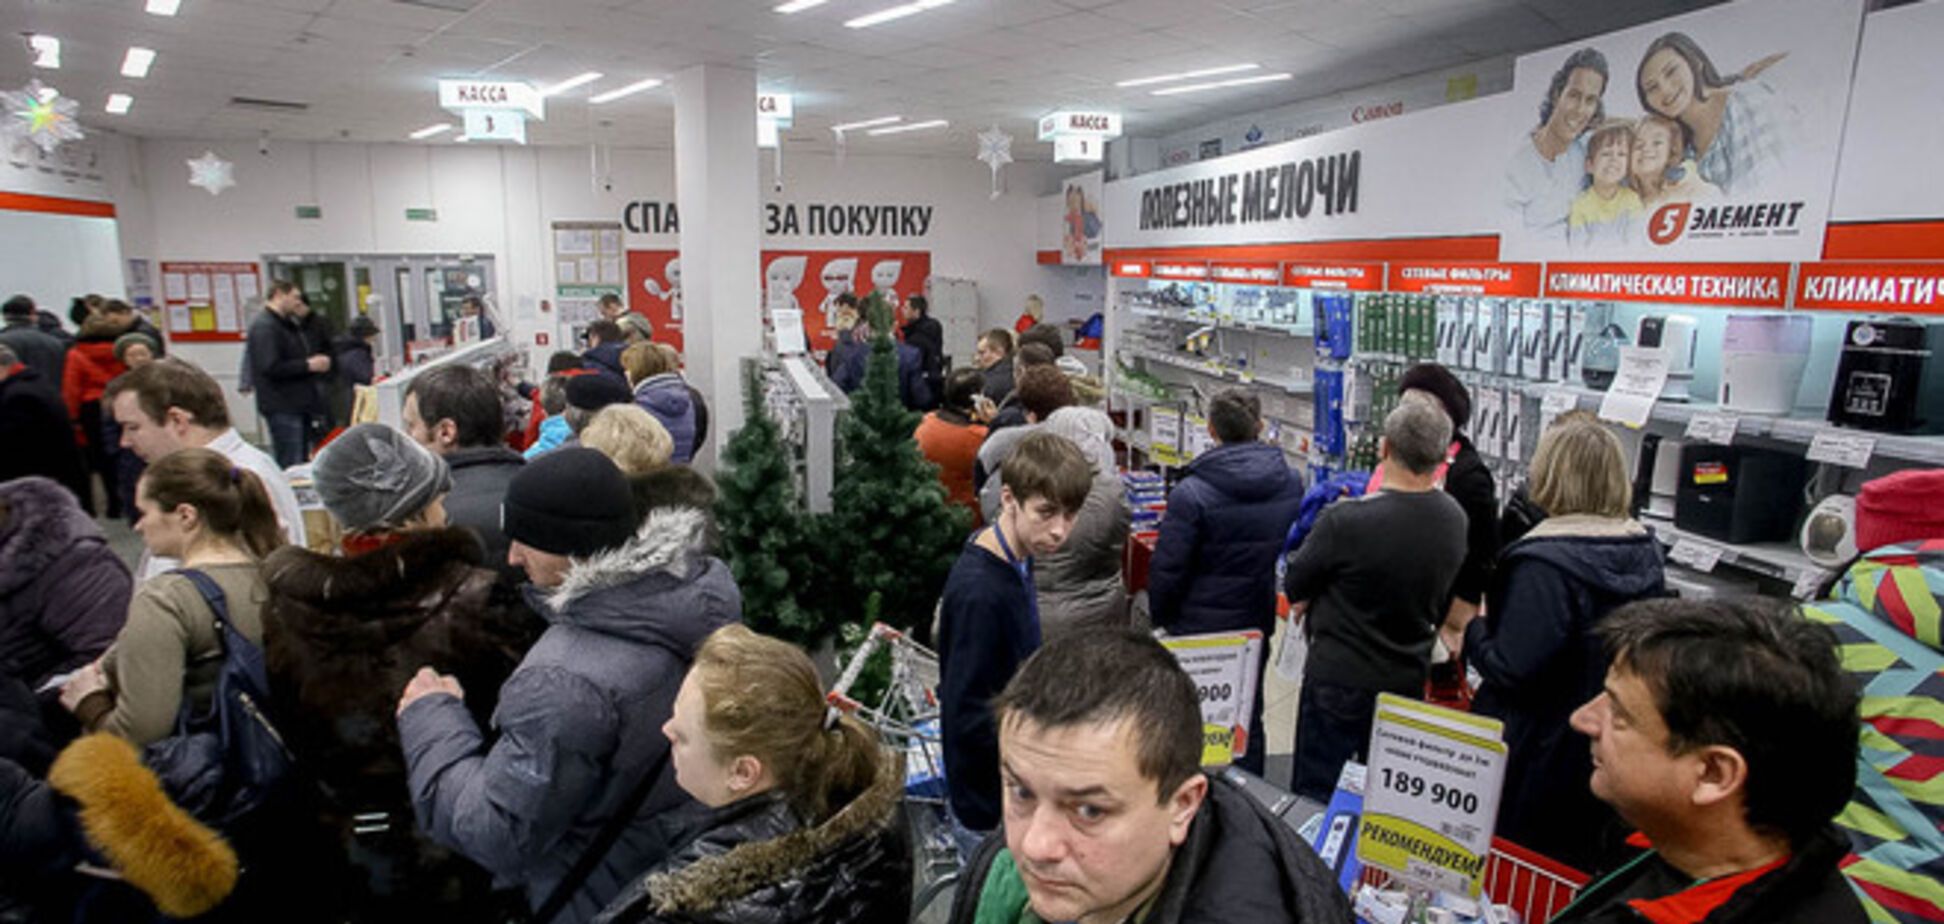 Беларусь 'заразилась' финансовым кризисом от России: фото давки в магазинах